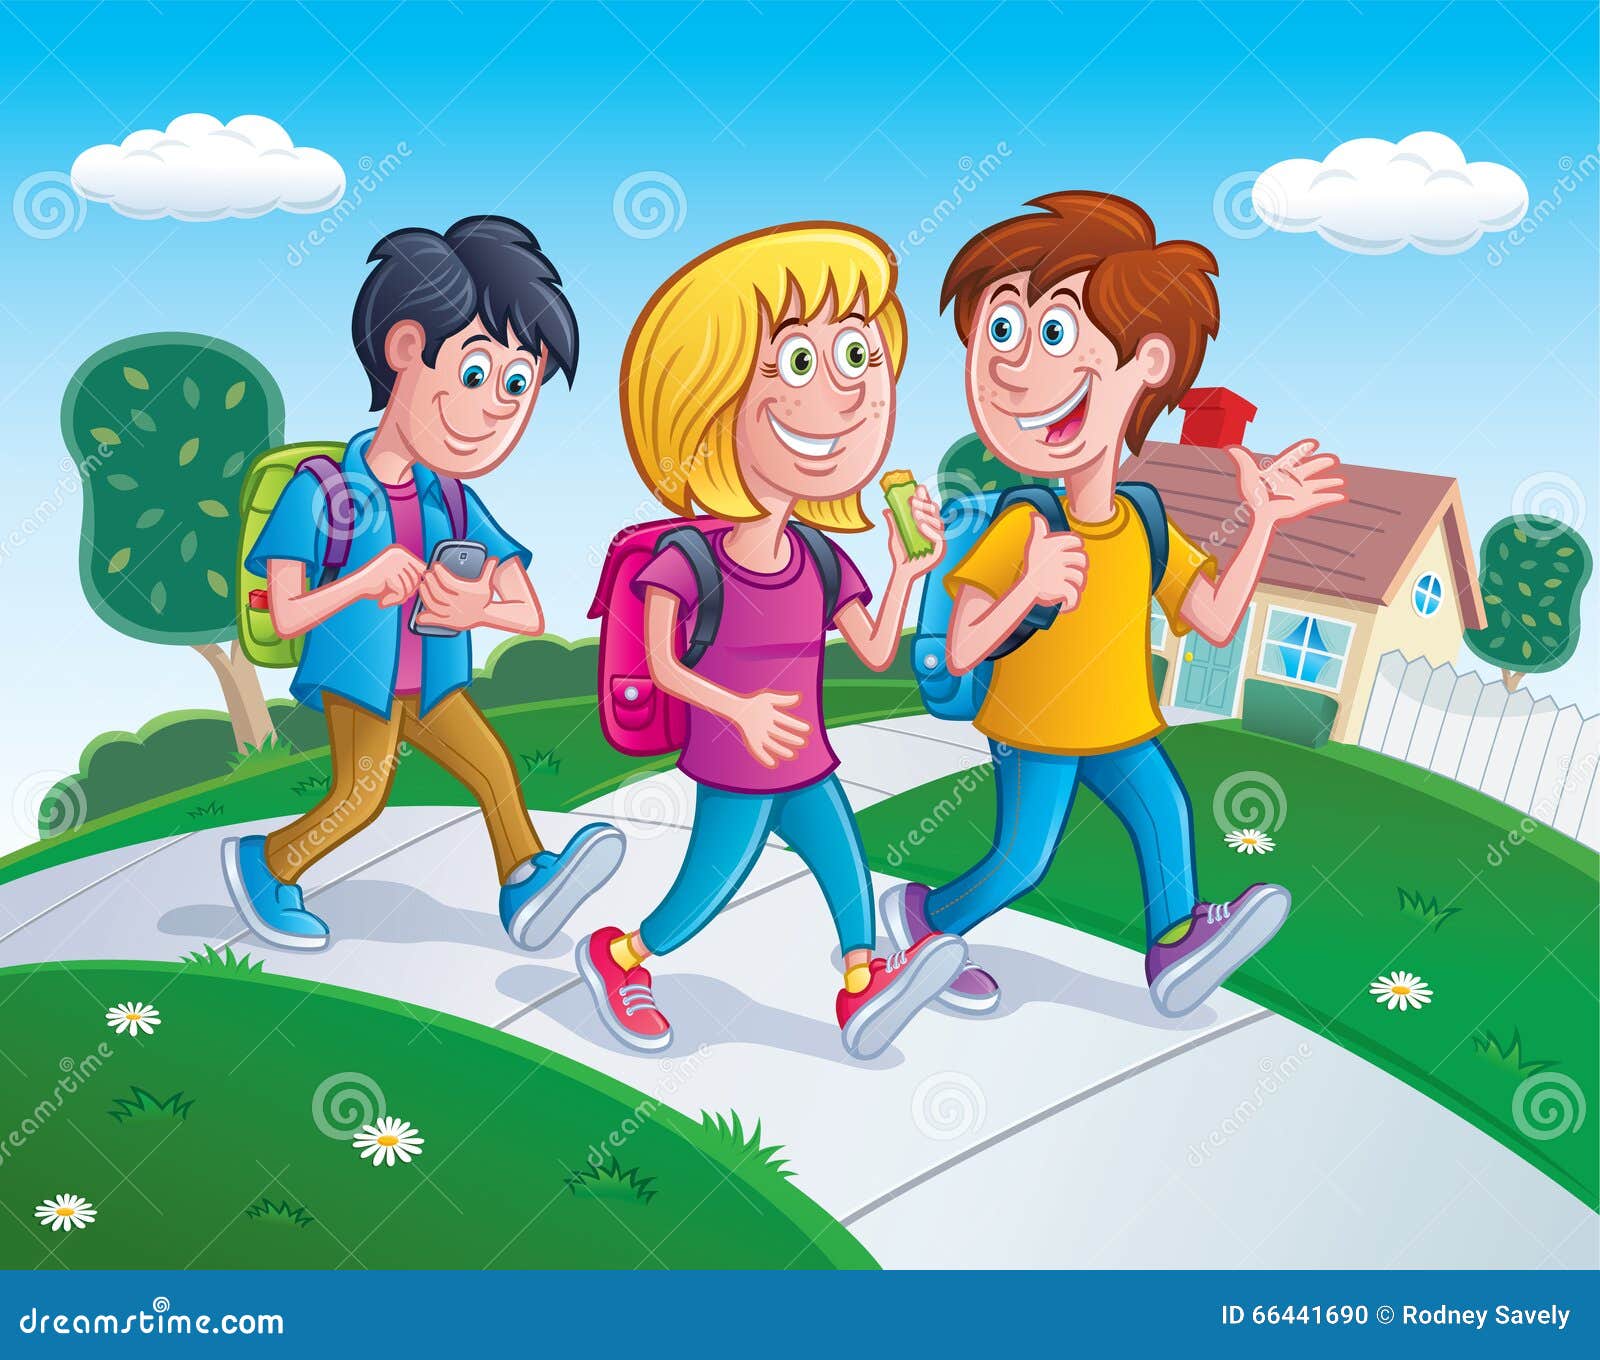 Go home together. Ребята идут в школу. Ребенок гуляет с друзьями. Дети на улице иллюстрация. Прогулка детей на улице.